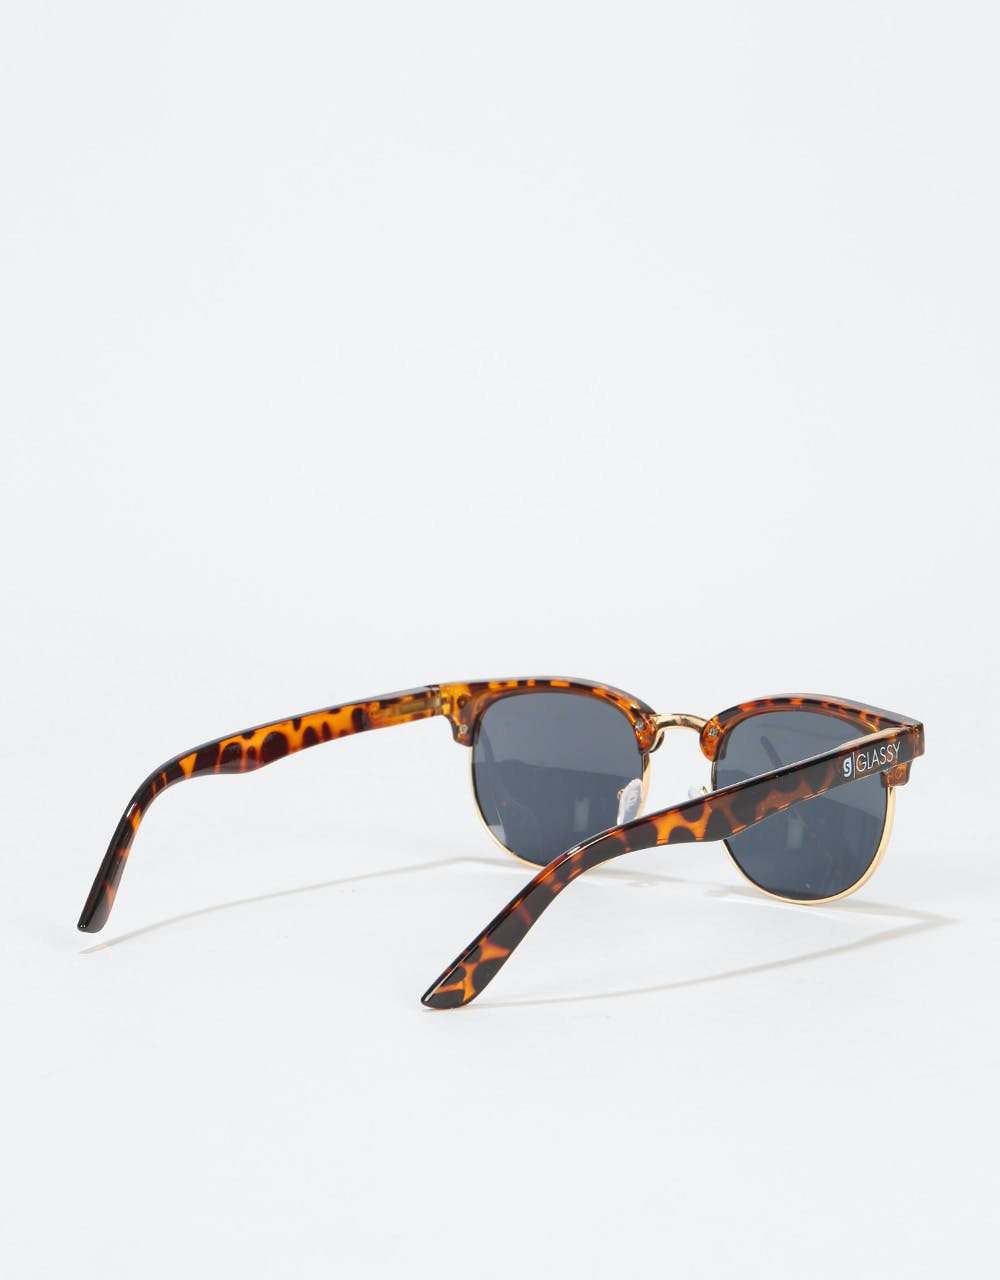 Glassy Sunhater Morrison Sunglasses - Tortoise